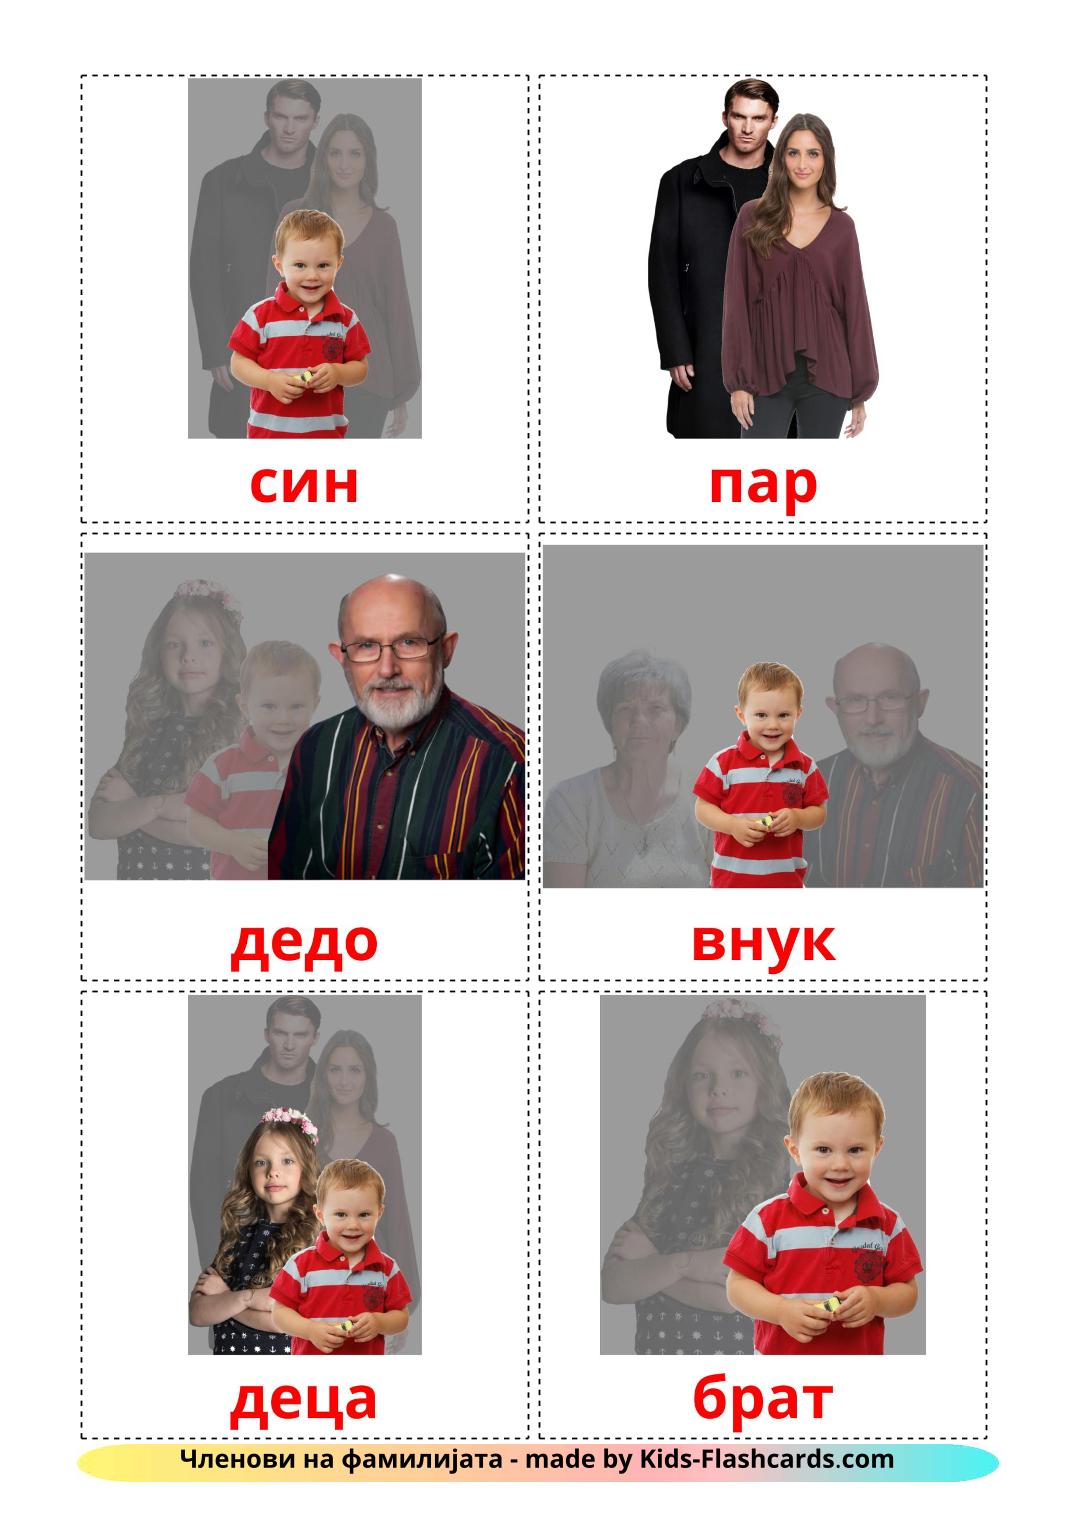 Membros da família - 32 Flashcards macedôniaes gratuitos para impressão